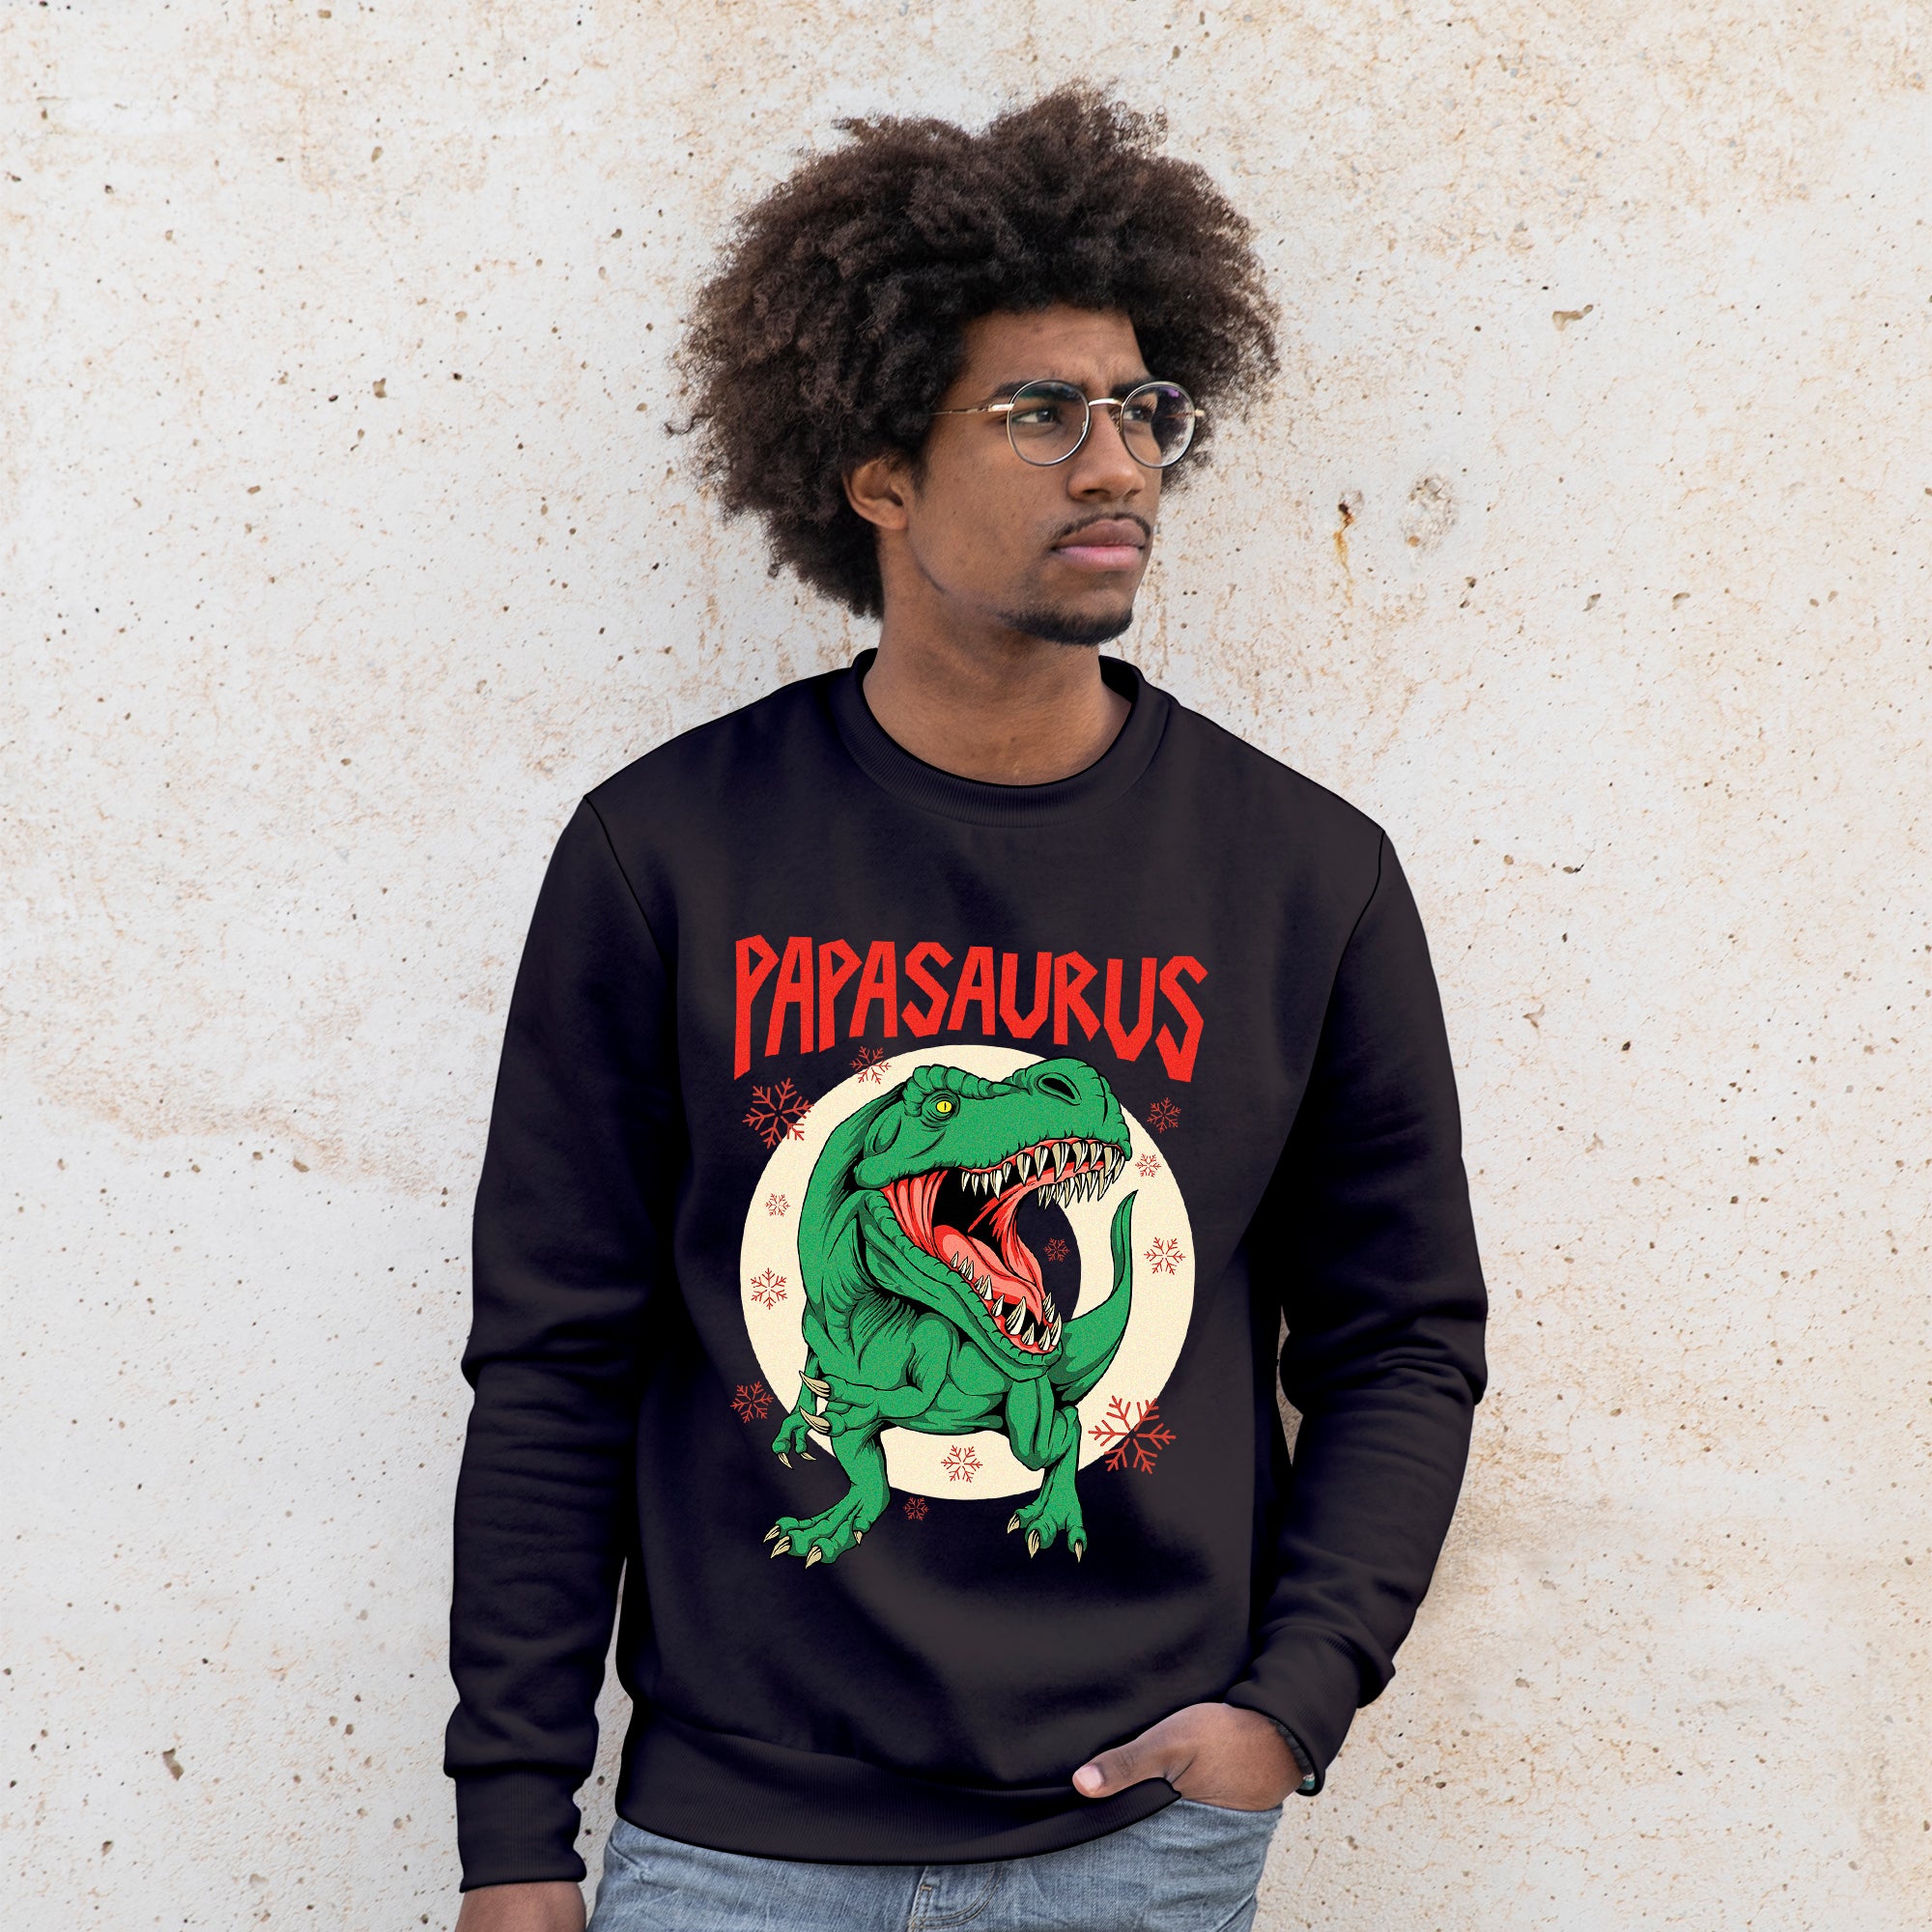 'Papasaurus' Sweatshirt